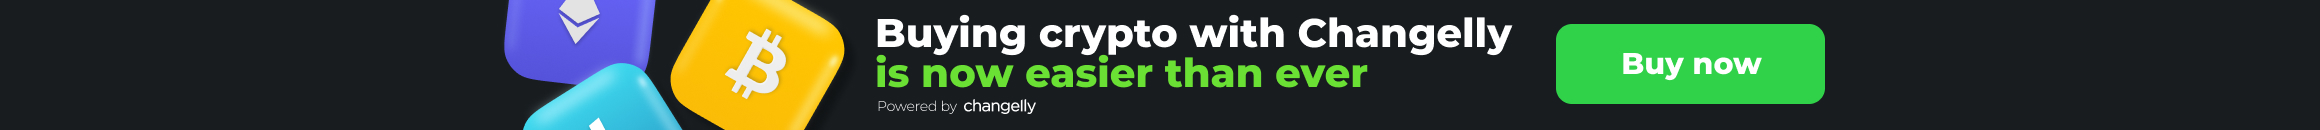 Buy Crypto